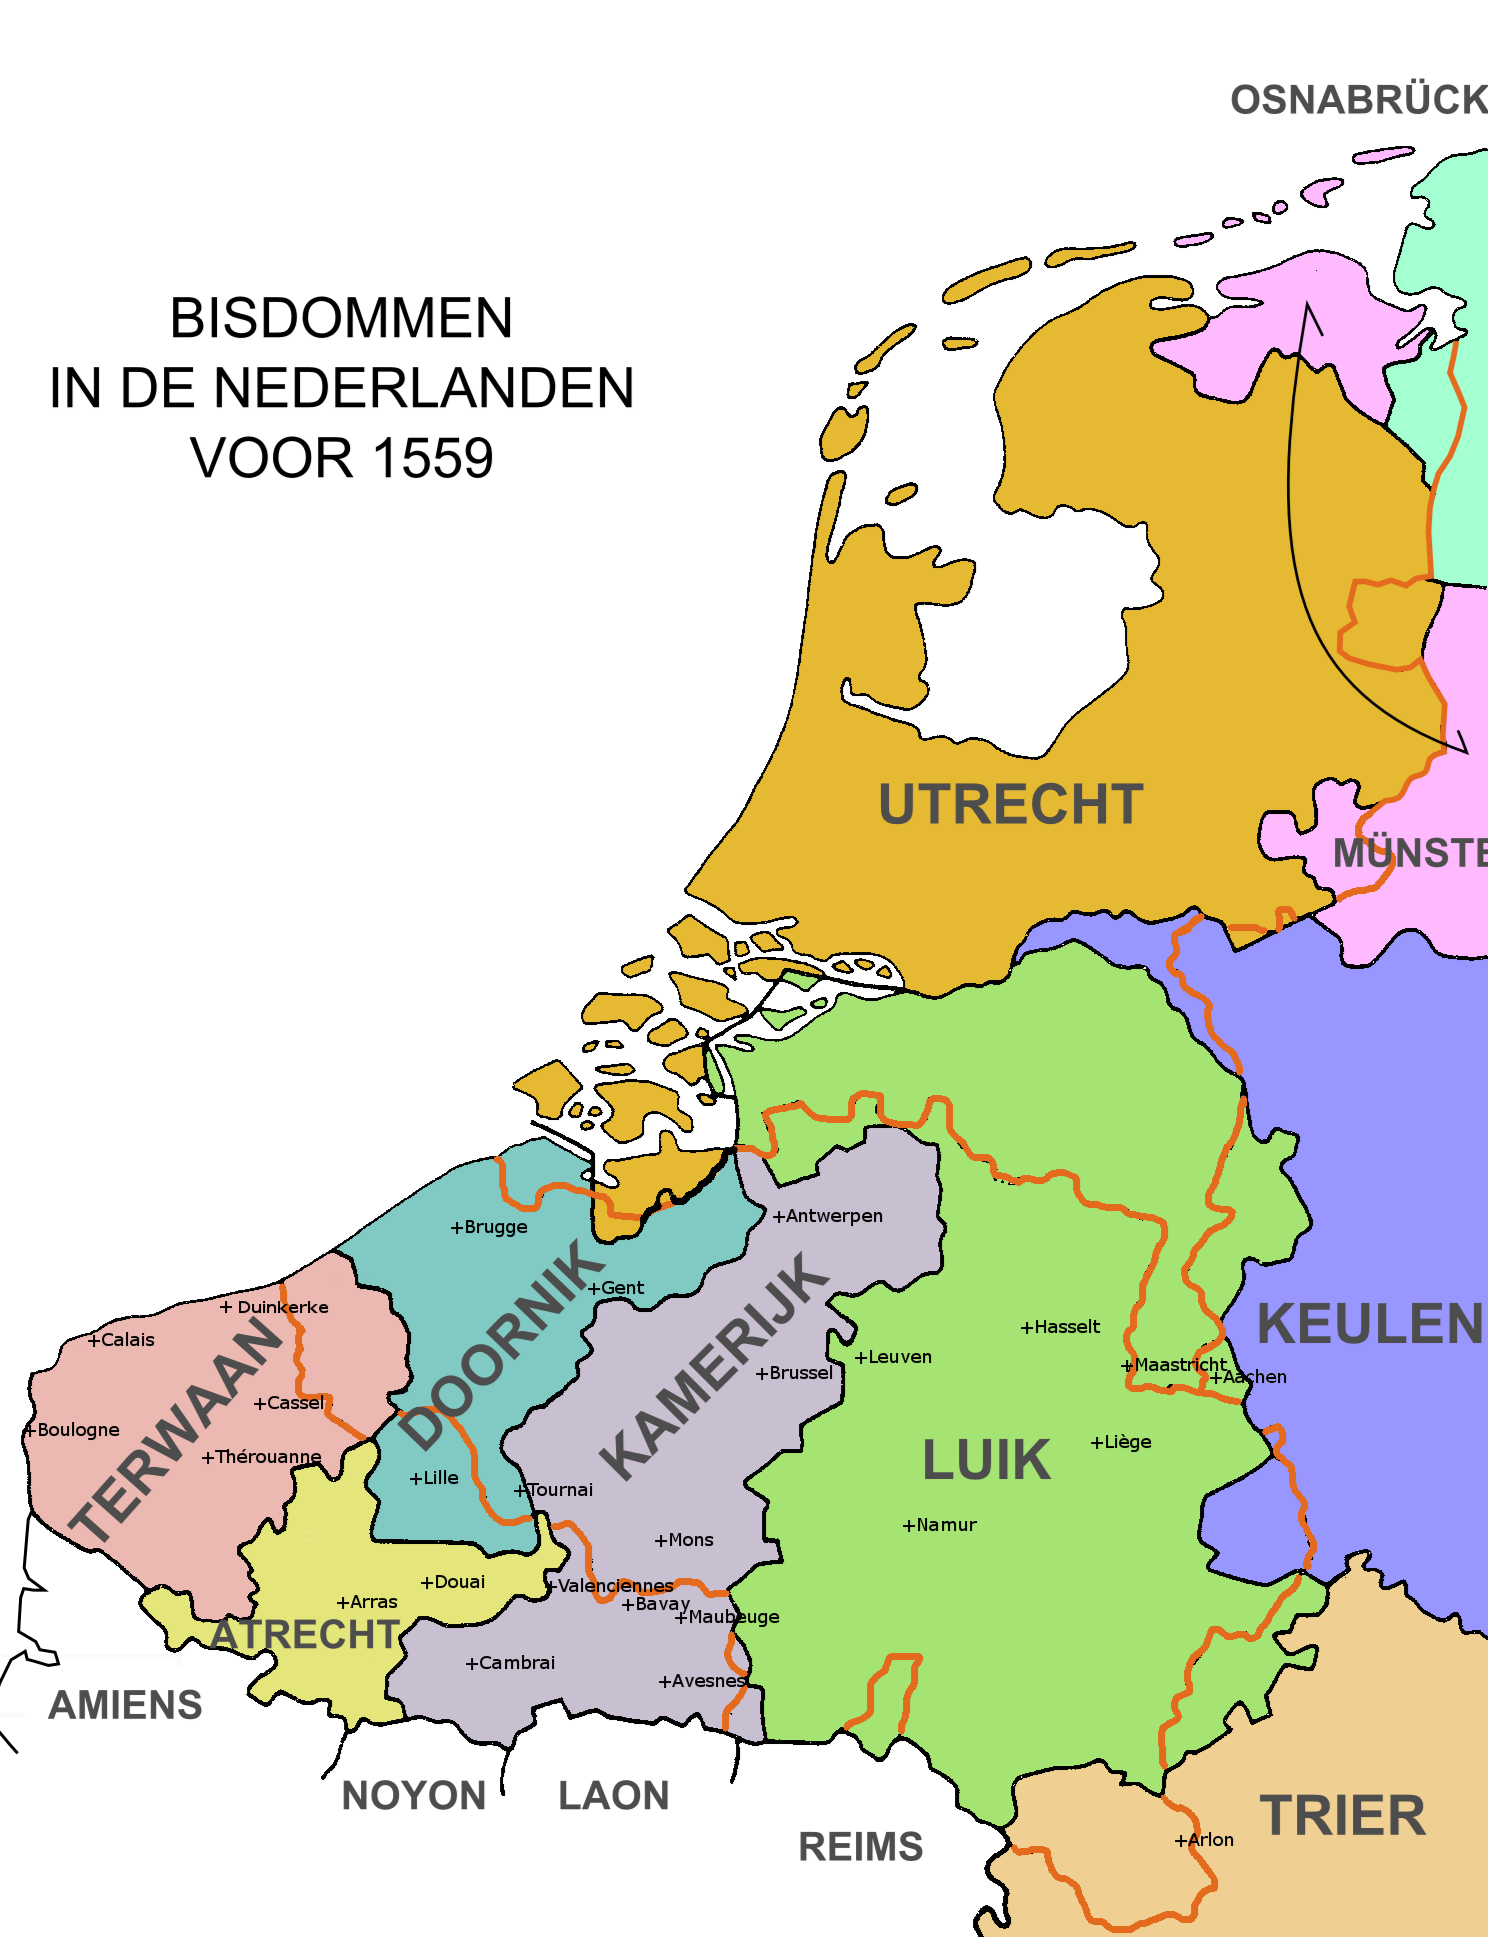 Bisdom Utrecht in Nederland